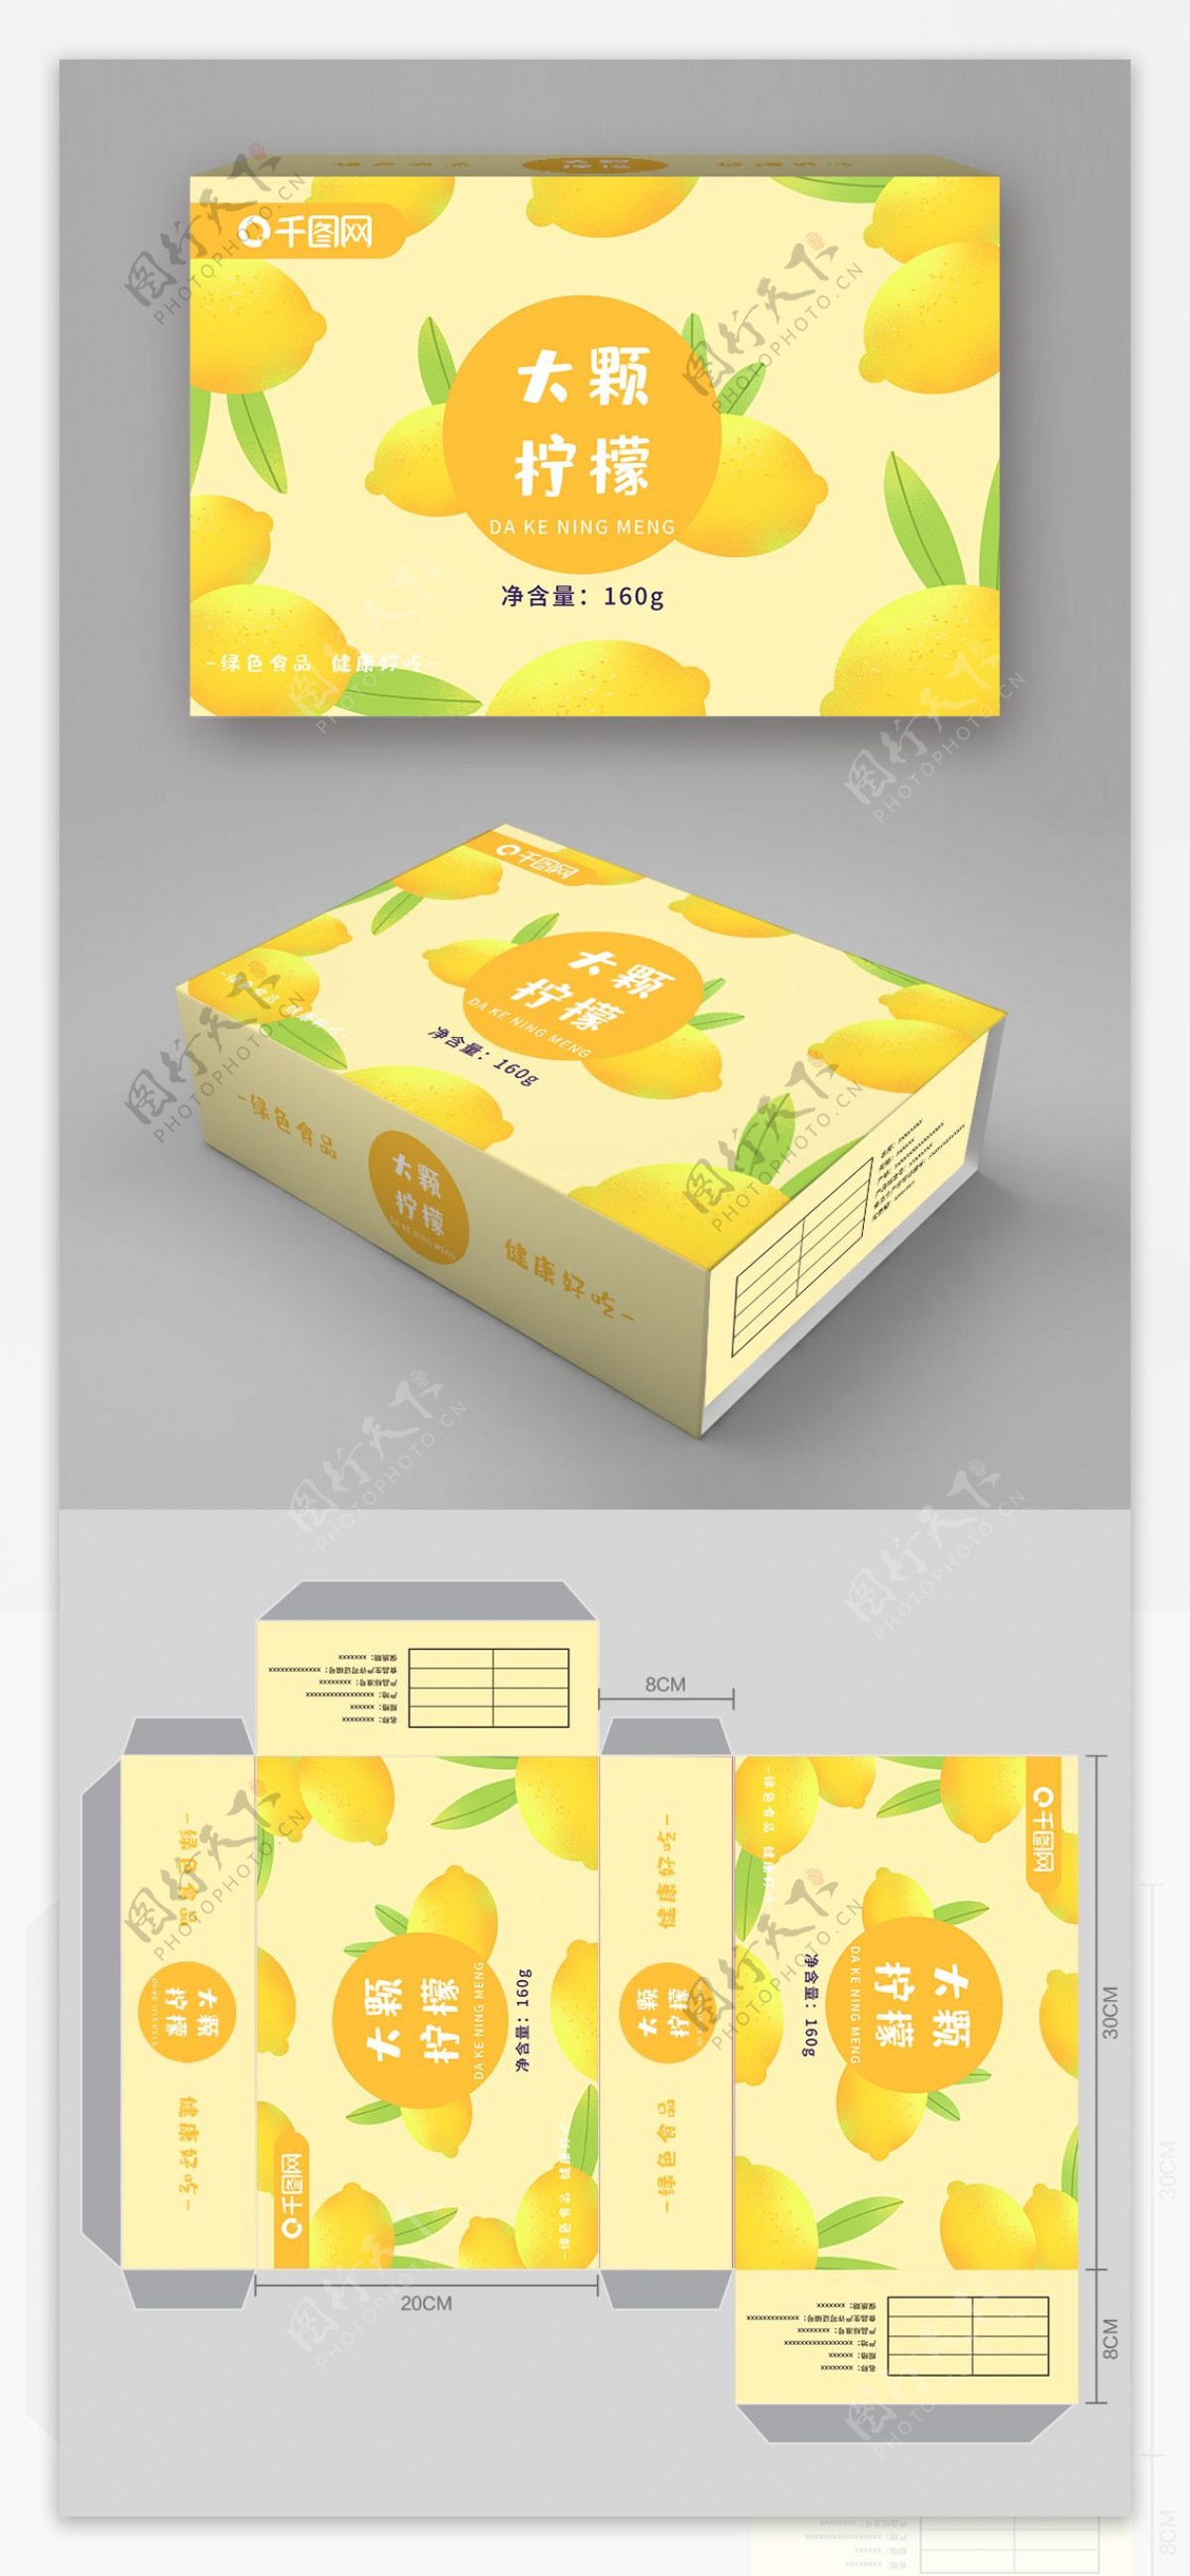 大颗柠檬插画绘画包装盒